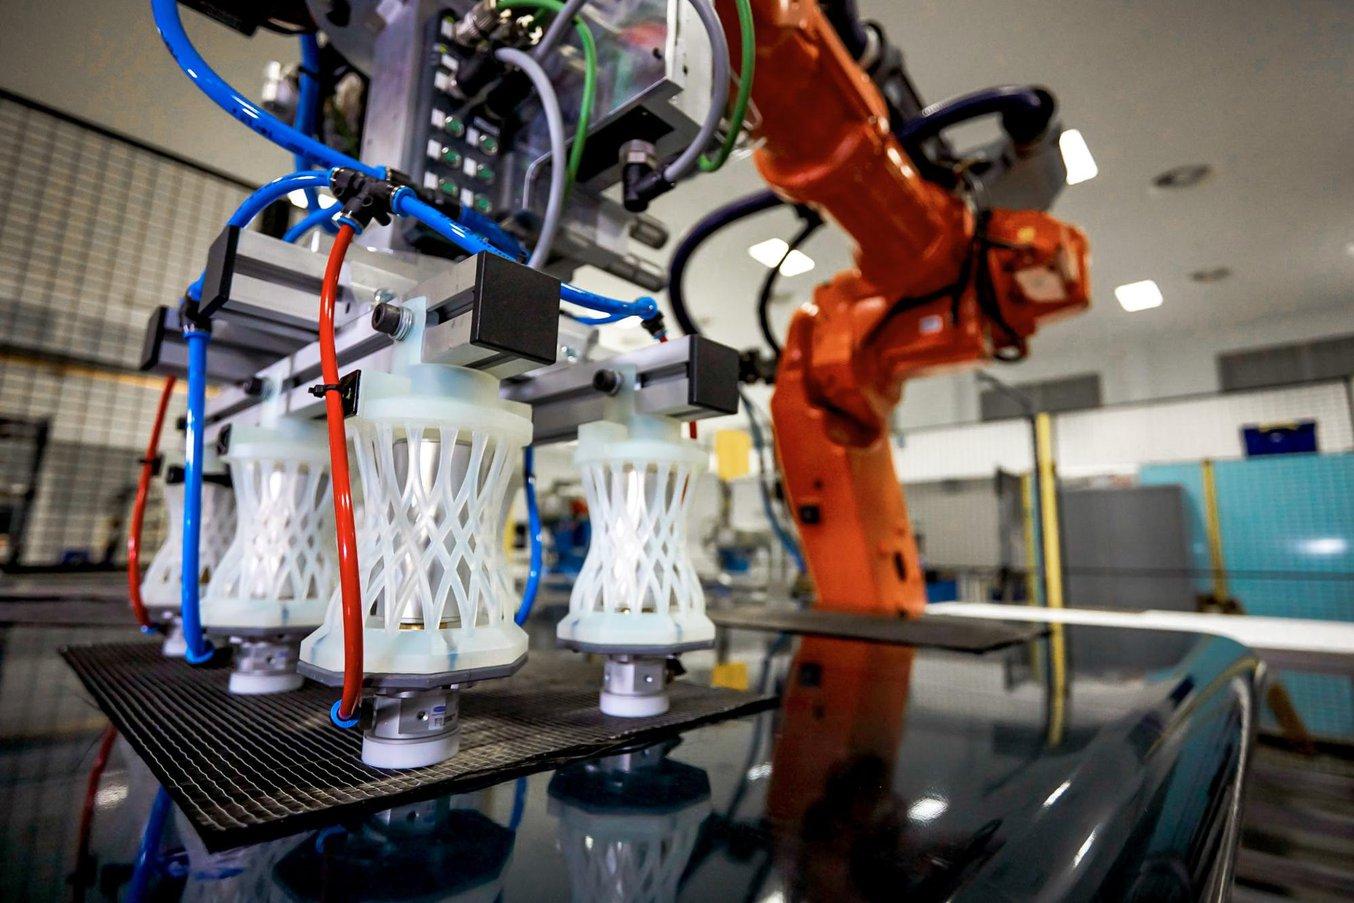 Les ingénieurs de l'AMRC utilisent un parc de 12 imprimantes 3D SLA et de nombreux matériaux techniques afin d'imprimer des pièces sur mesure pour divers projets de recherche